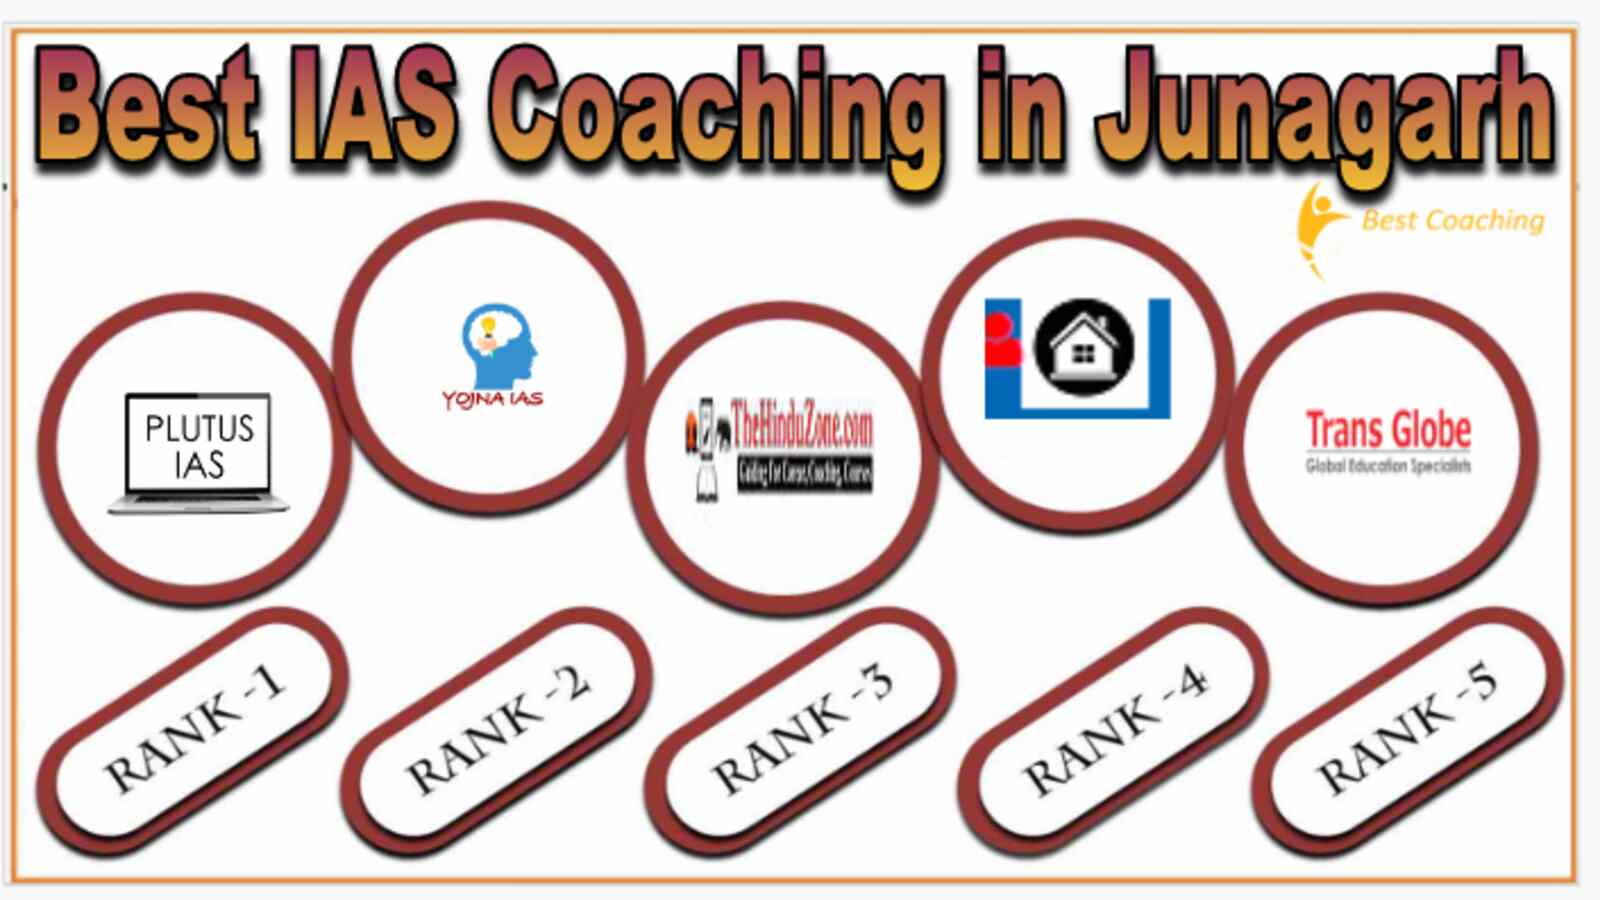 Best IAS Coaching in Junagarh